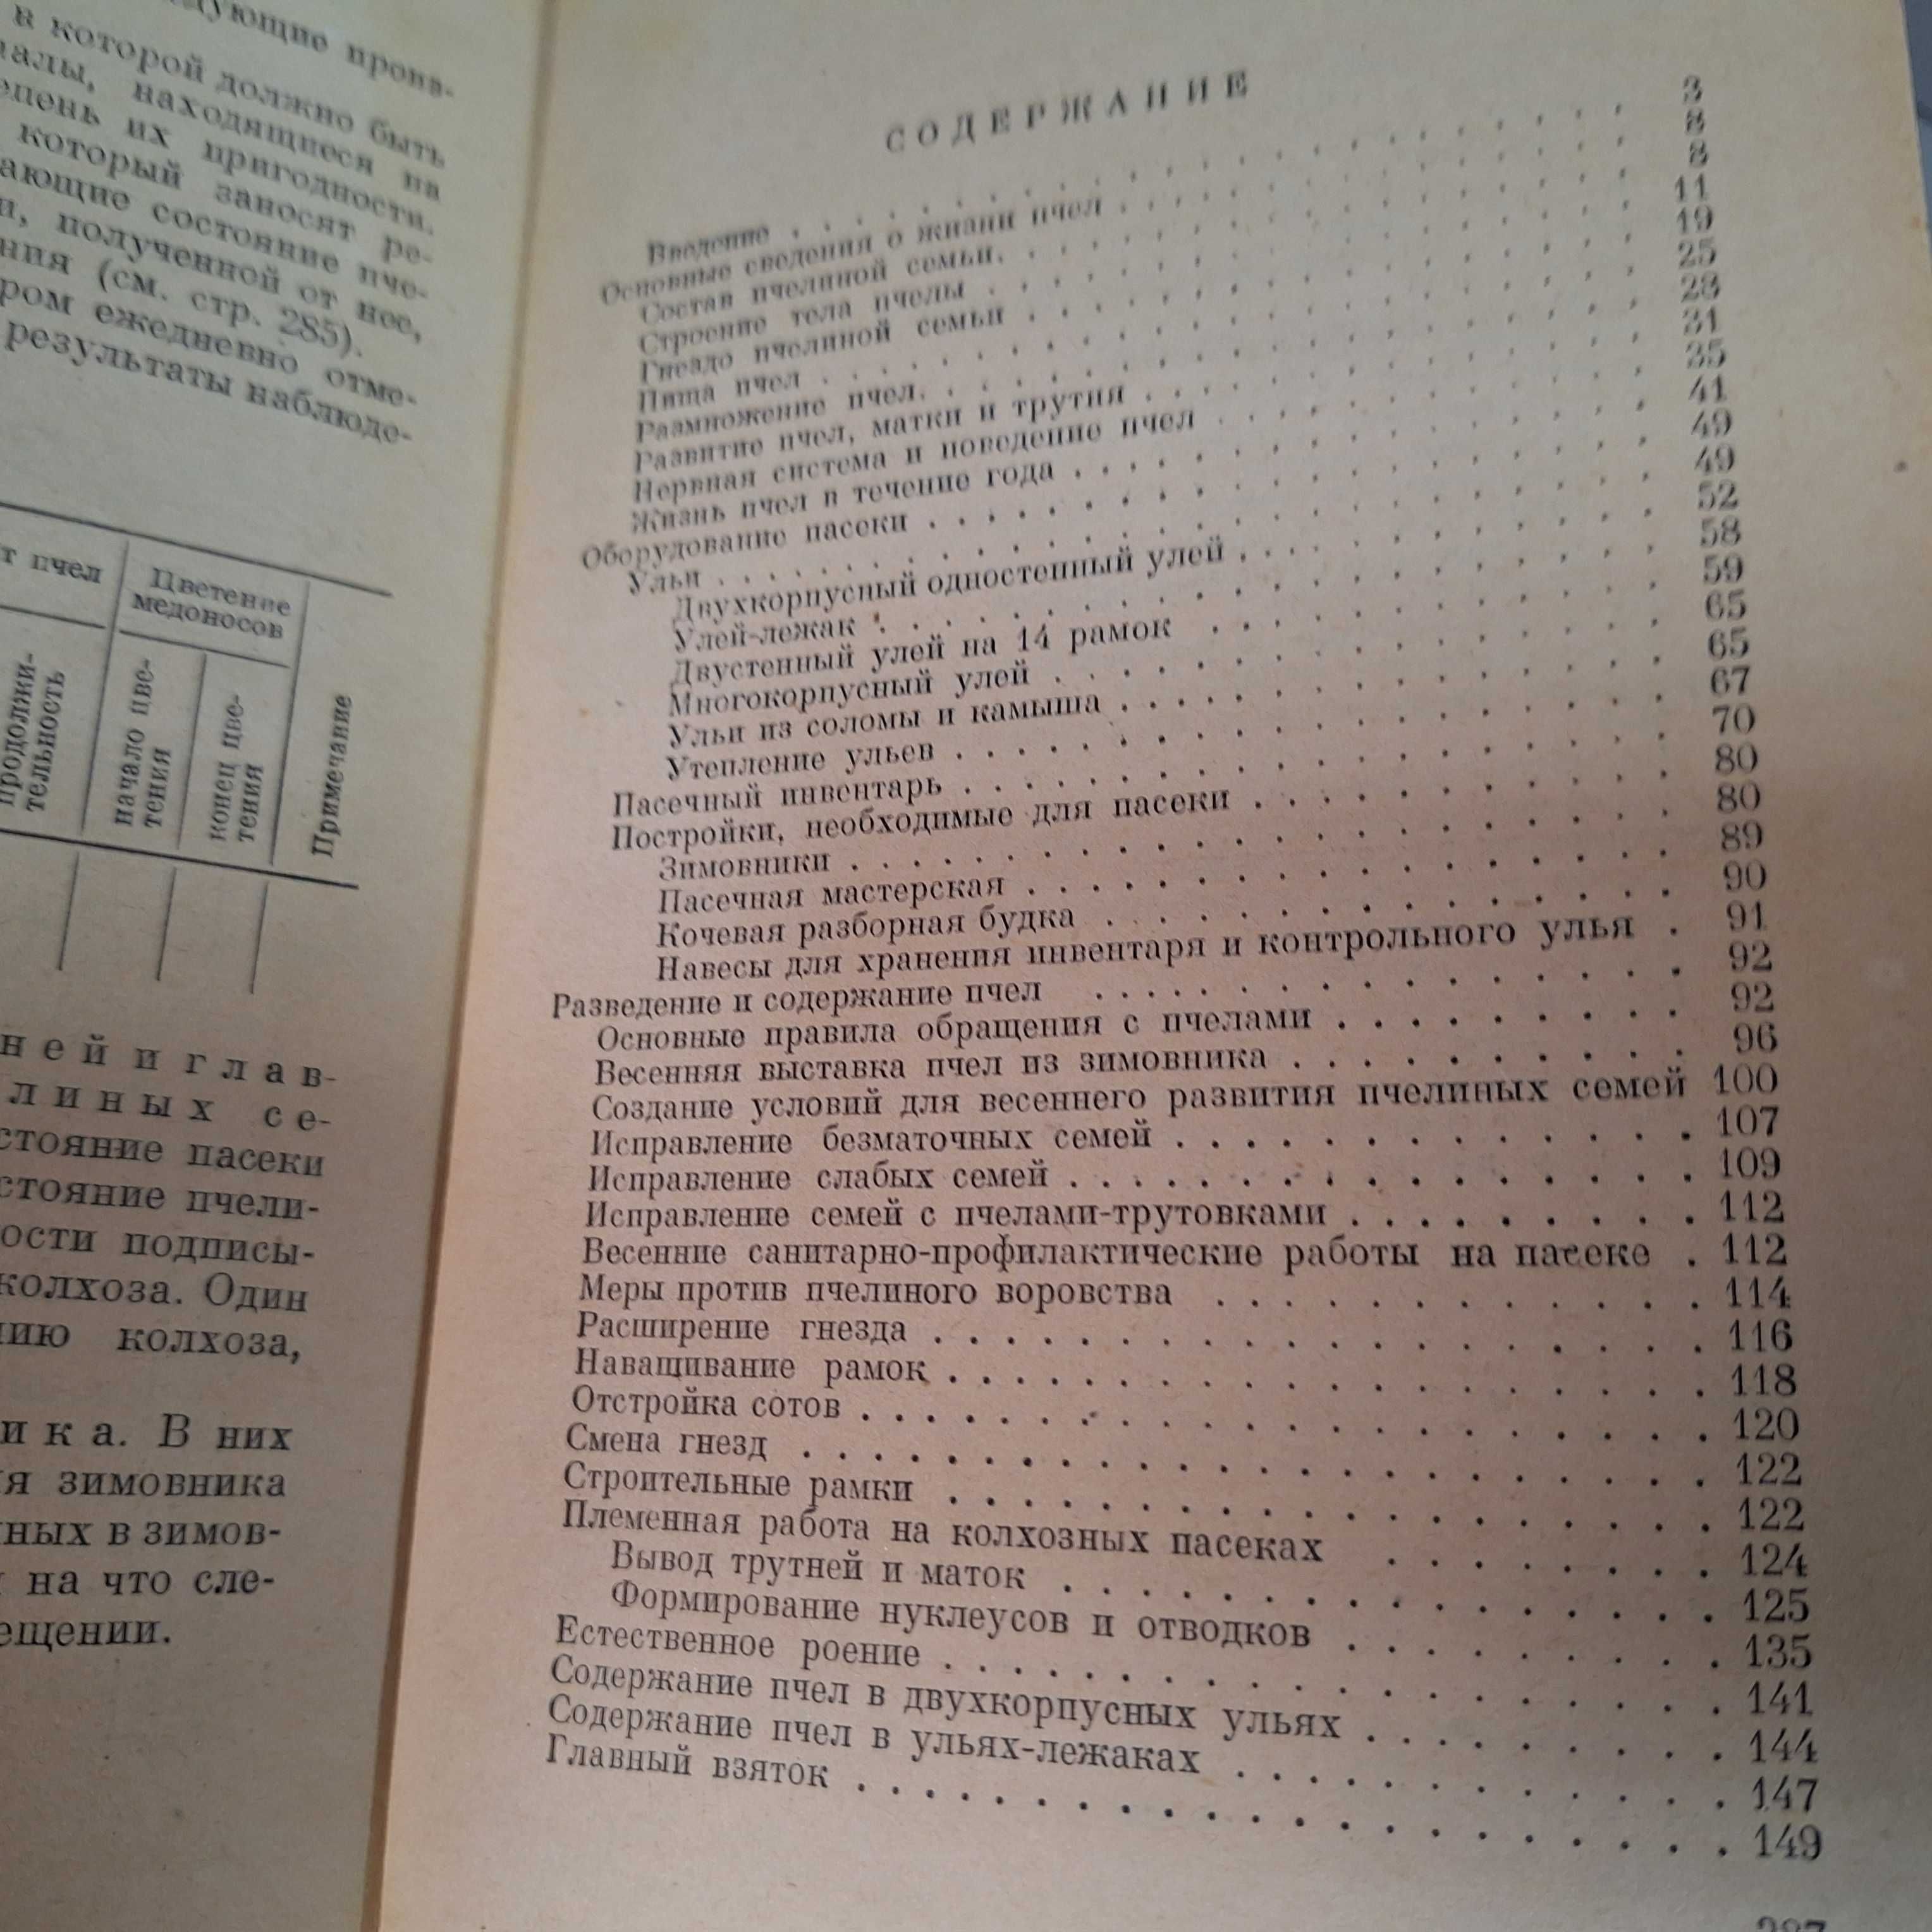 А.А. Климентов "ПЧЕЛОВОДСТВО" 1954 г. на Руски език